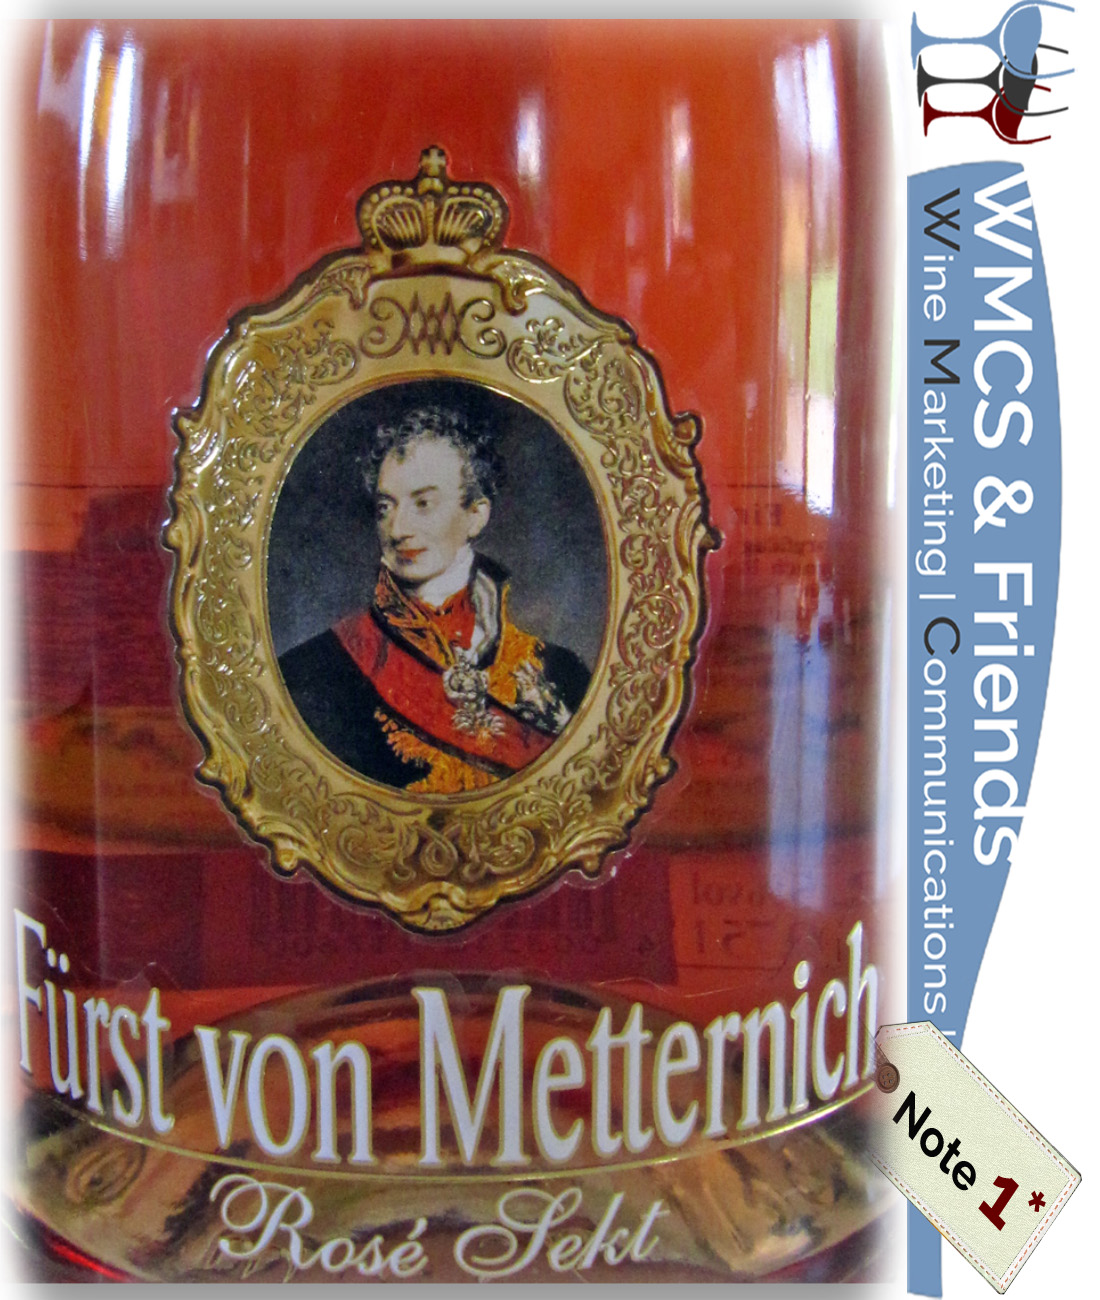 Metternich von Rosé-Sekt Spätburgunder Fürst